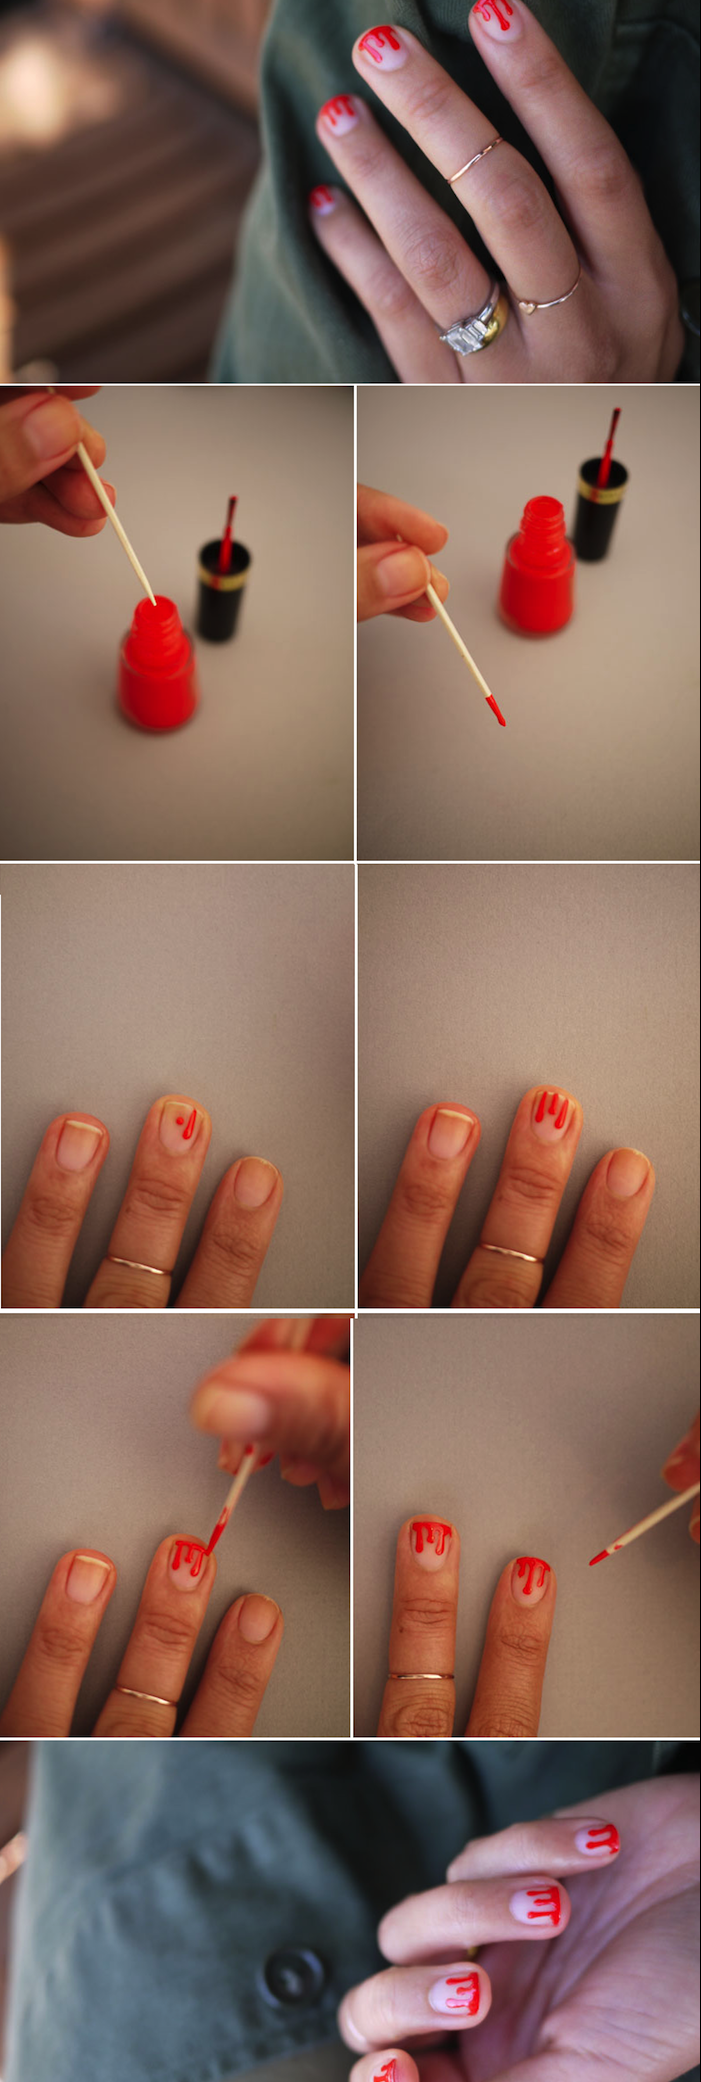 nail art bilder, rød neglelakk, kort negler maling, diy